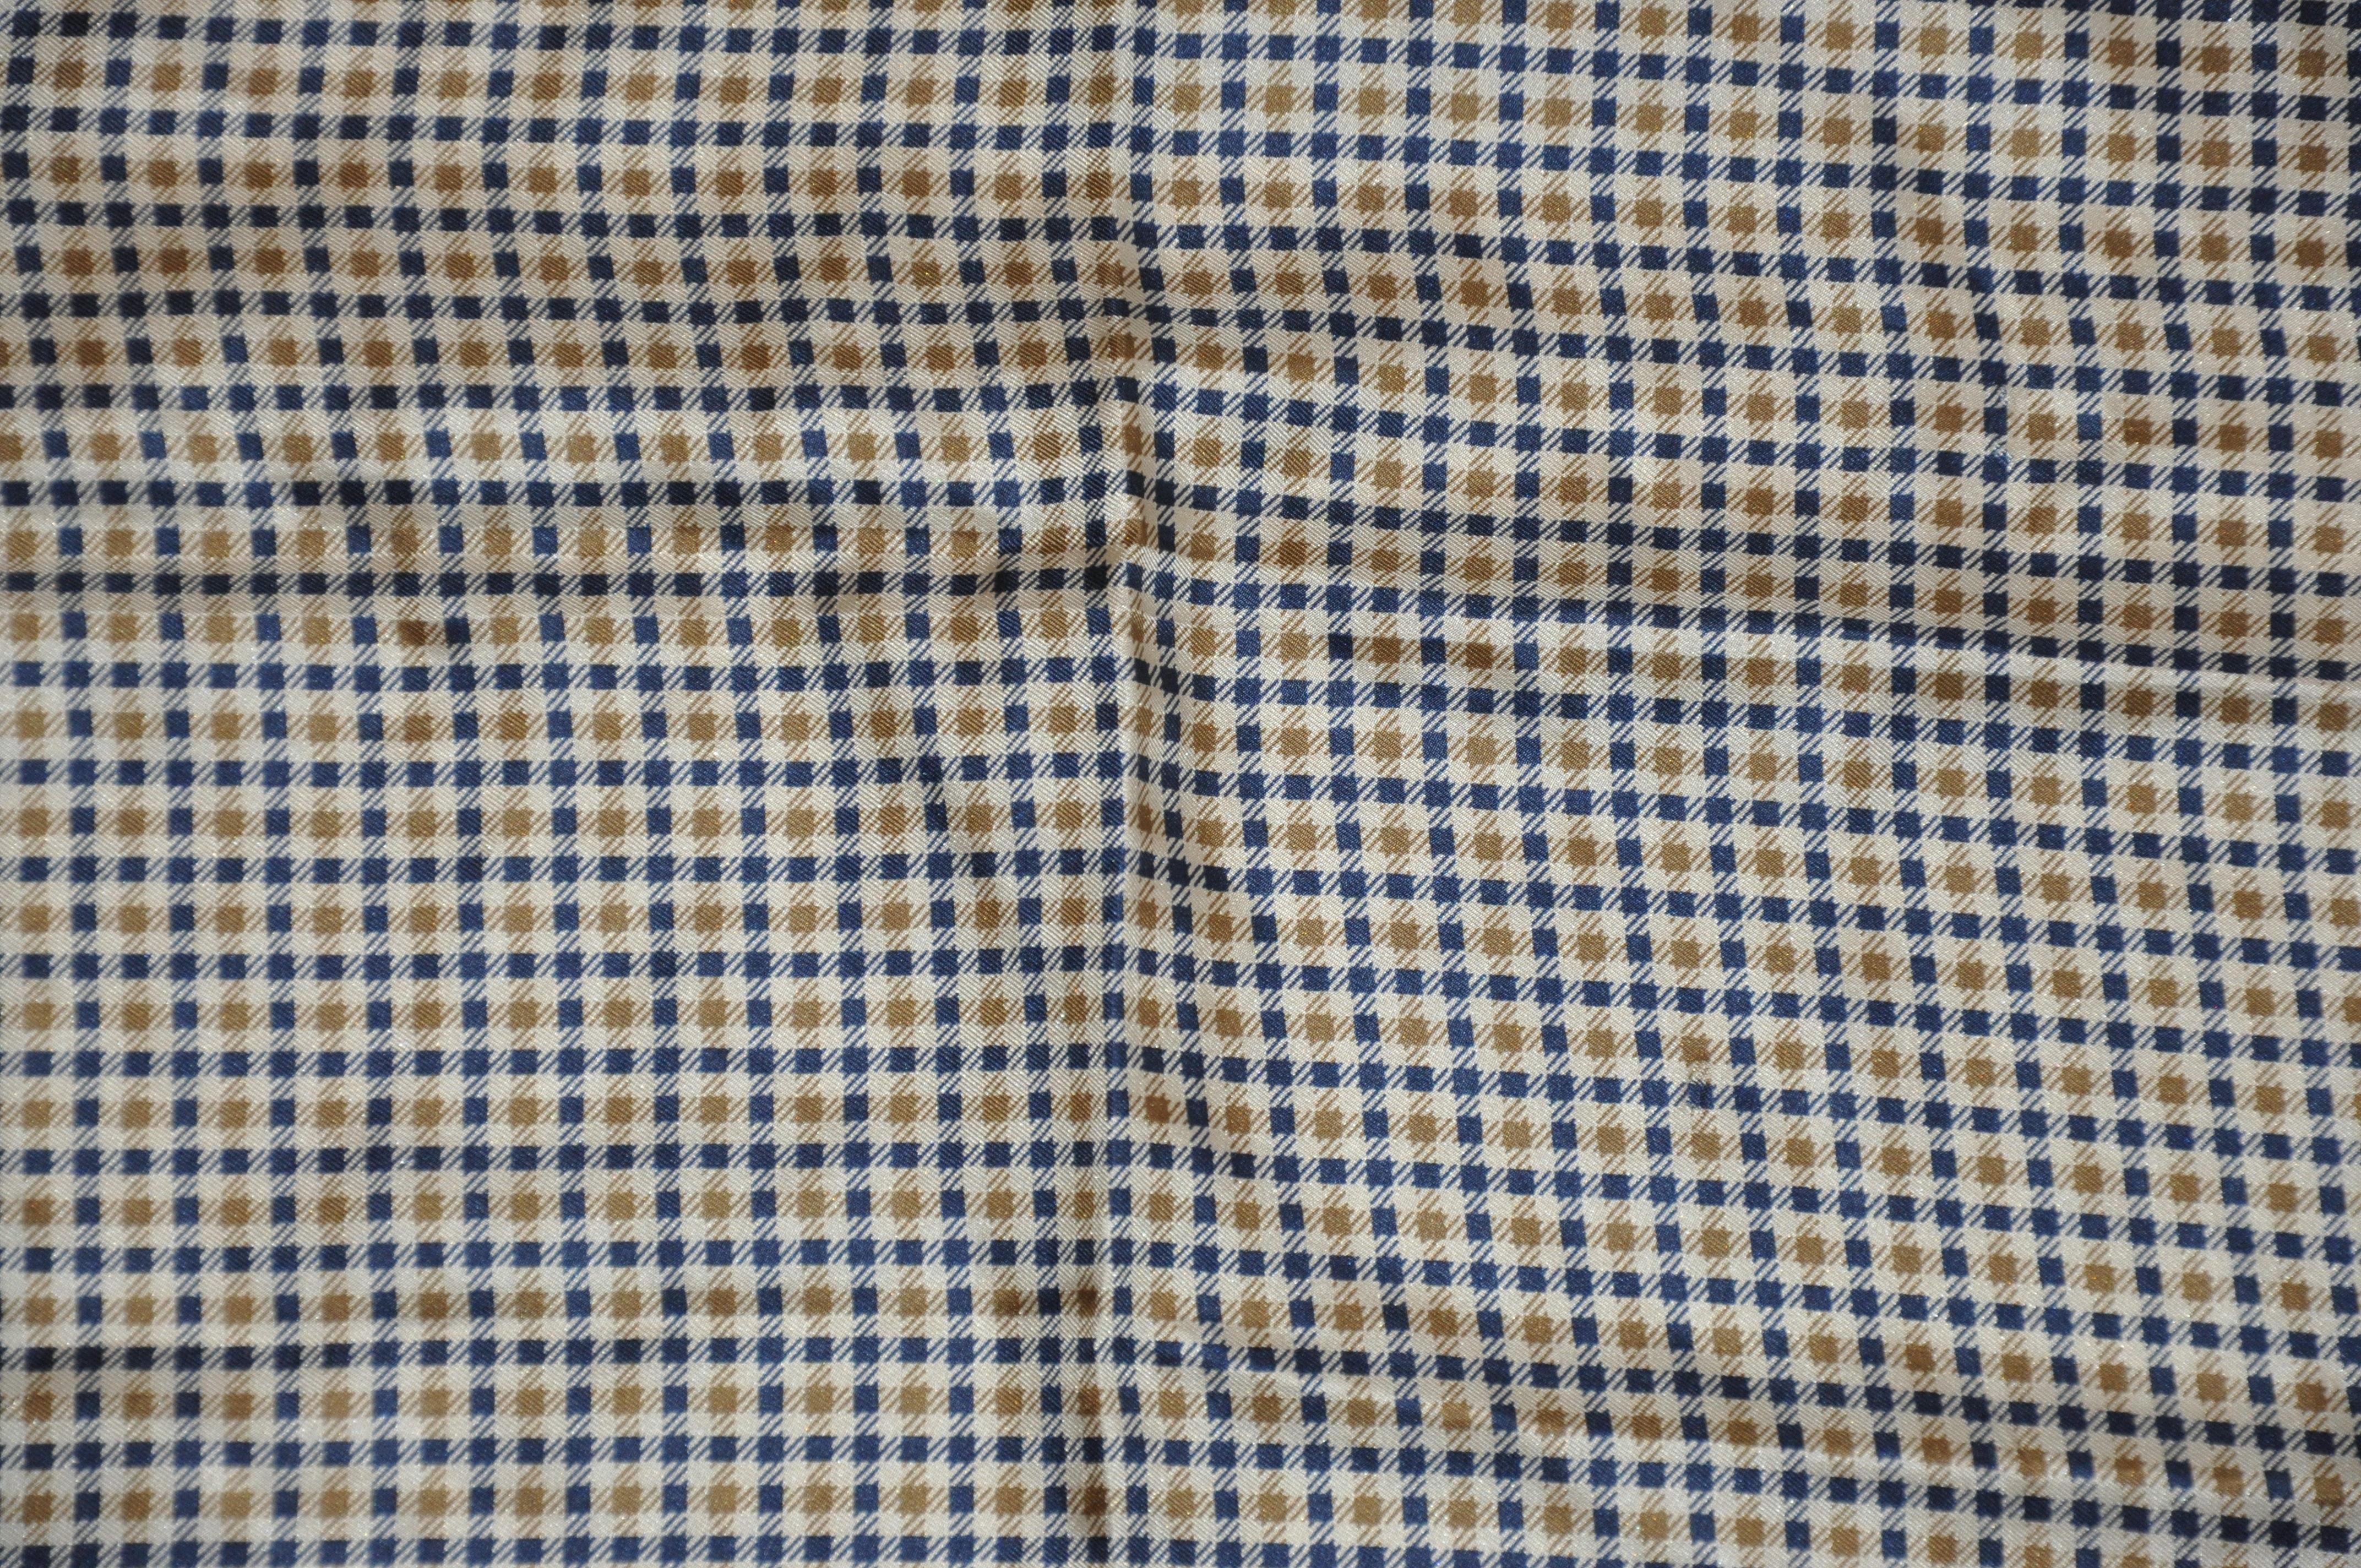        L'imprimé iconique Aquascutum dans un mouchoir en soie pour homme, accentué par des bords roulés à la main, mesure 15 pouces par 15 pouces. Fabriquées en Italie.